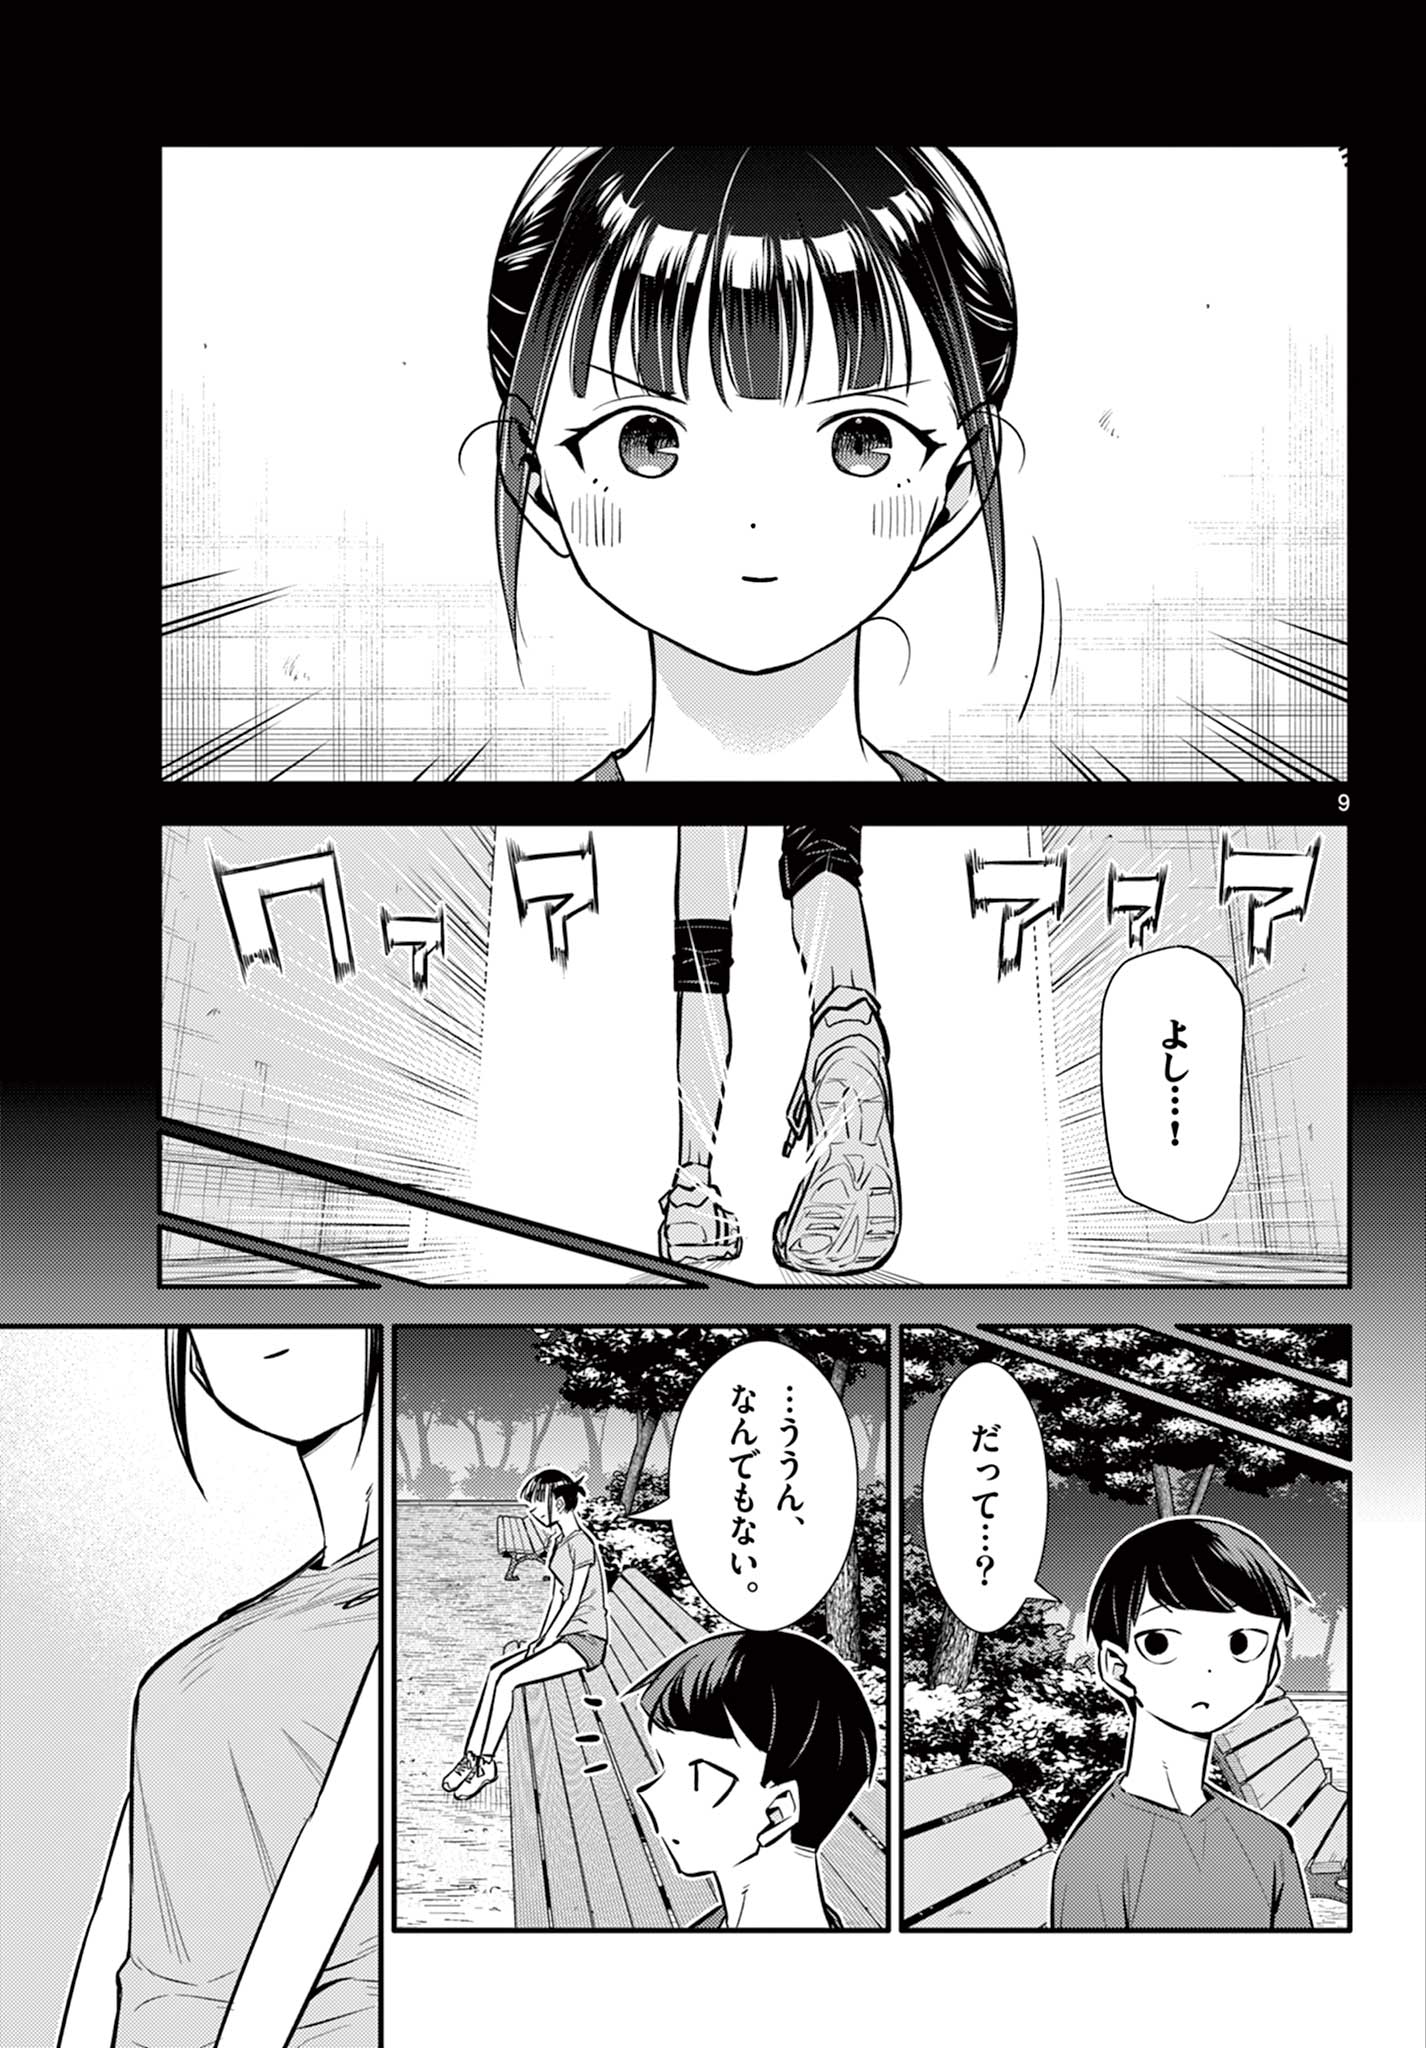 Chiisai Boku no Haru - Chapter 22 - Page 9